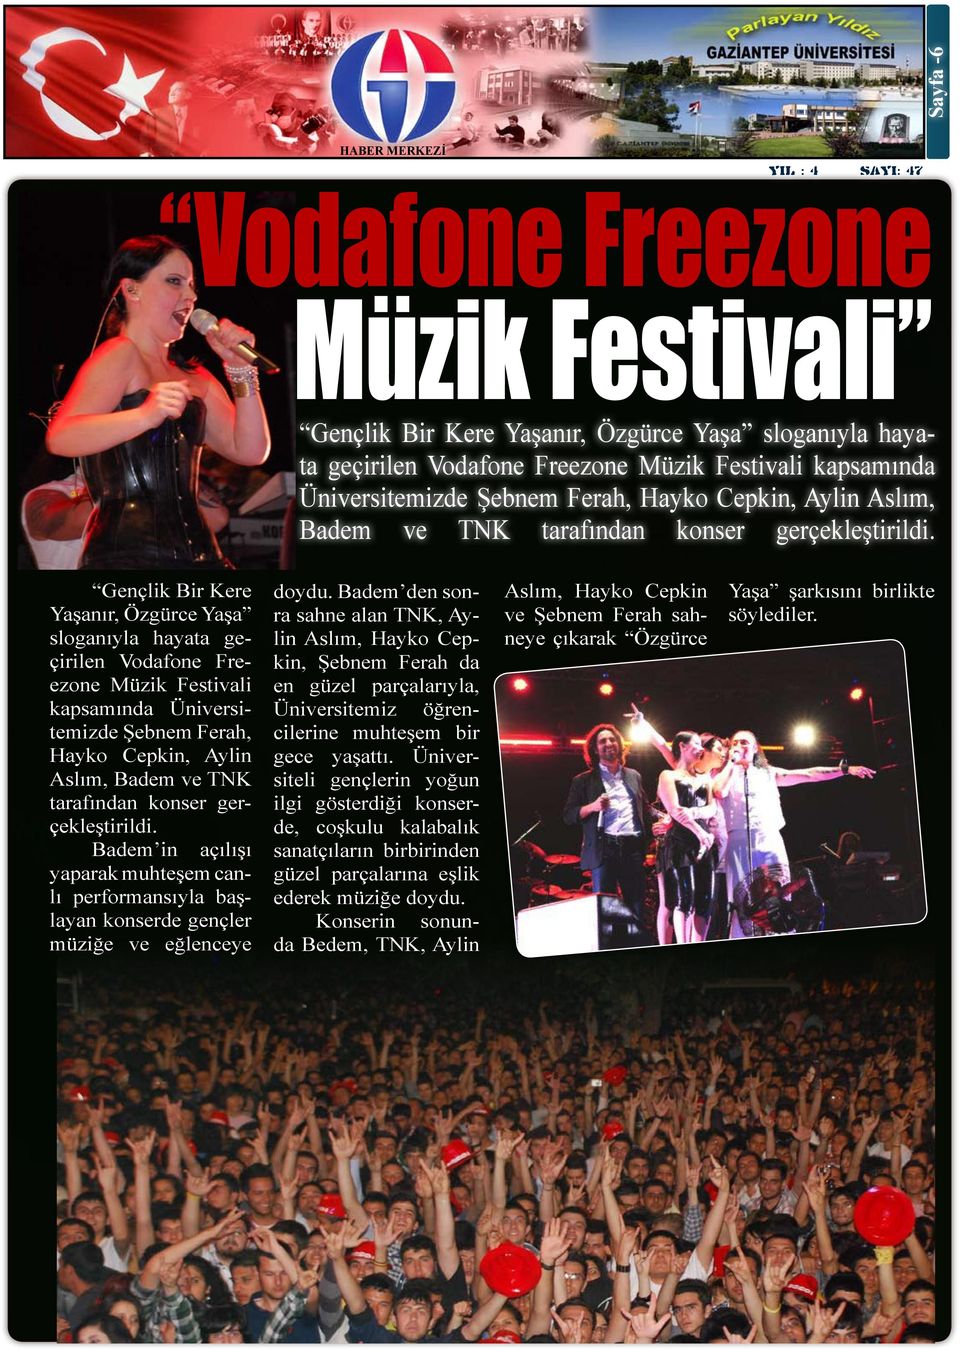 Gençlik Bir Kere Yaşanır, Özgürce Yaşa sloganıyla hayata geçirilen Vodafone Freezone Müzik Festivali kapsamında Üniversitemizde Şebnem Ferah, Hayko Cepkin,  Badem in açılışı yaparak muhteşem canlı